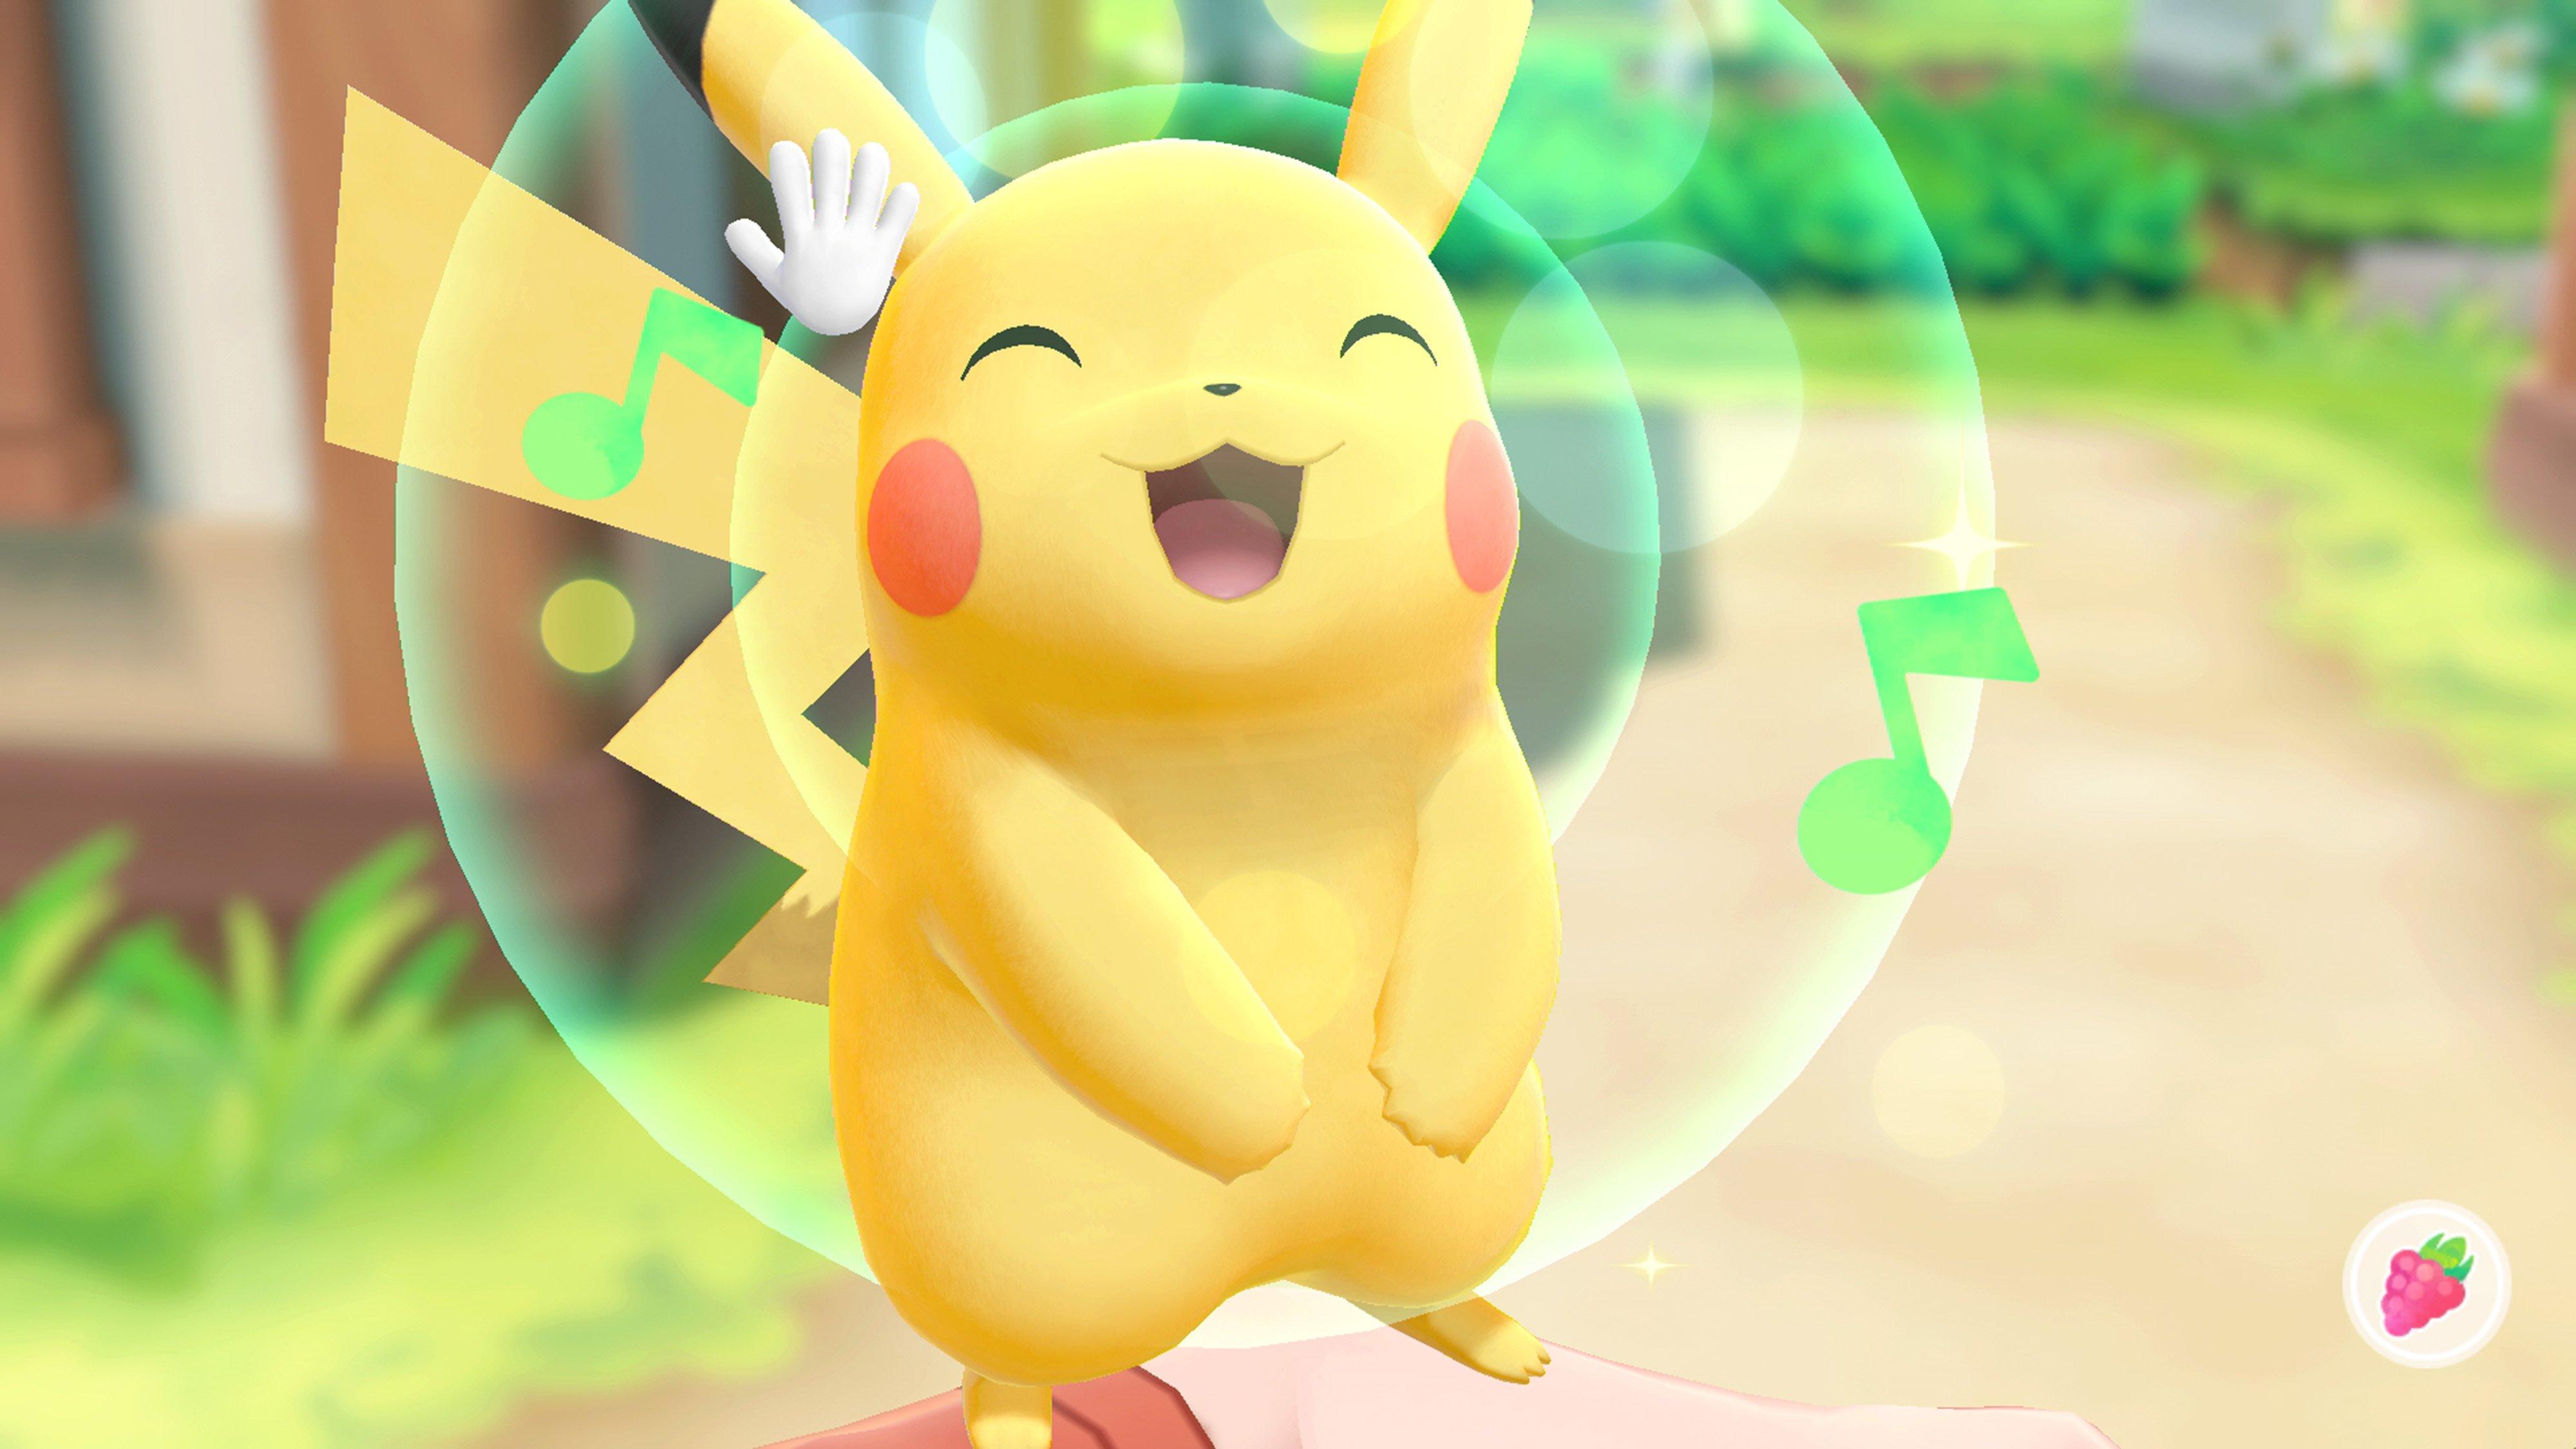 Pokemon: Let's Go, Pikachu! - Nintendo Switch, Nintendo Switch